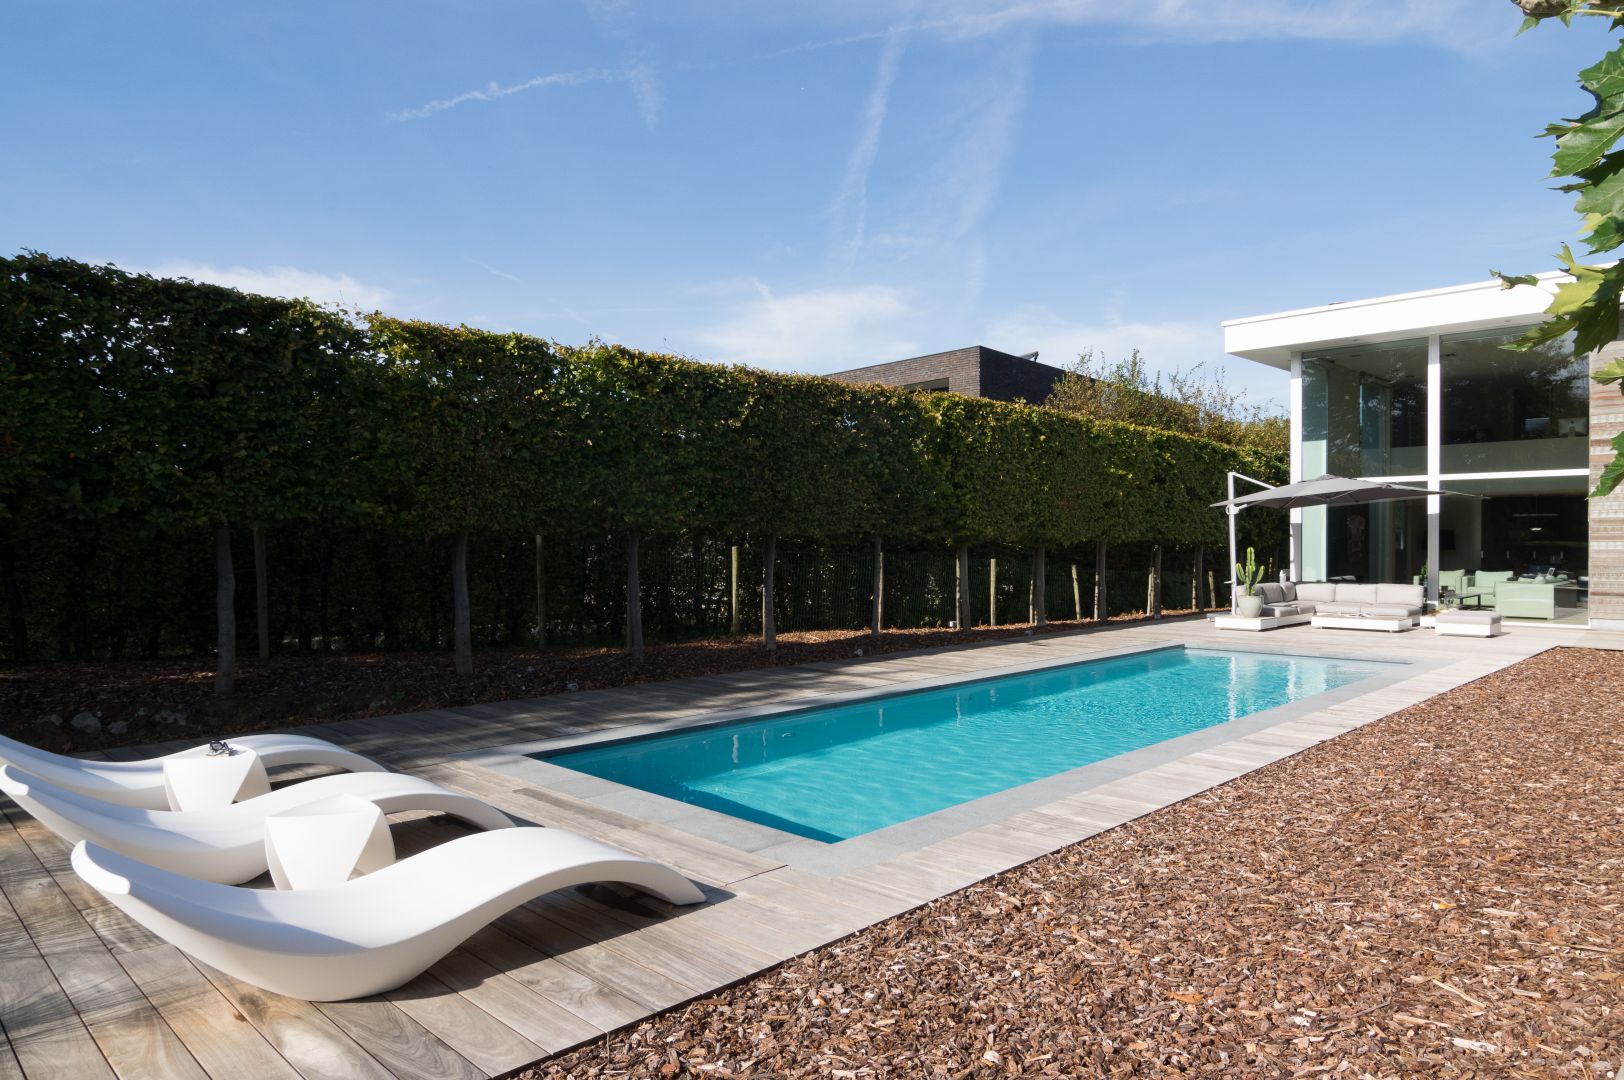 Baantjes zwemmen in uw tuin? ZK12 Pearl Grey van LPW Pools past perfect in moderne tuinen.